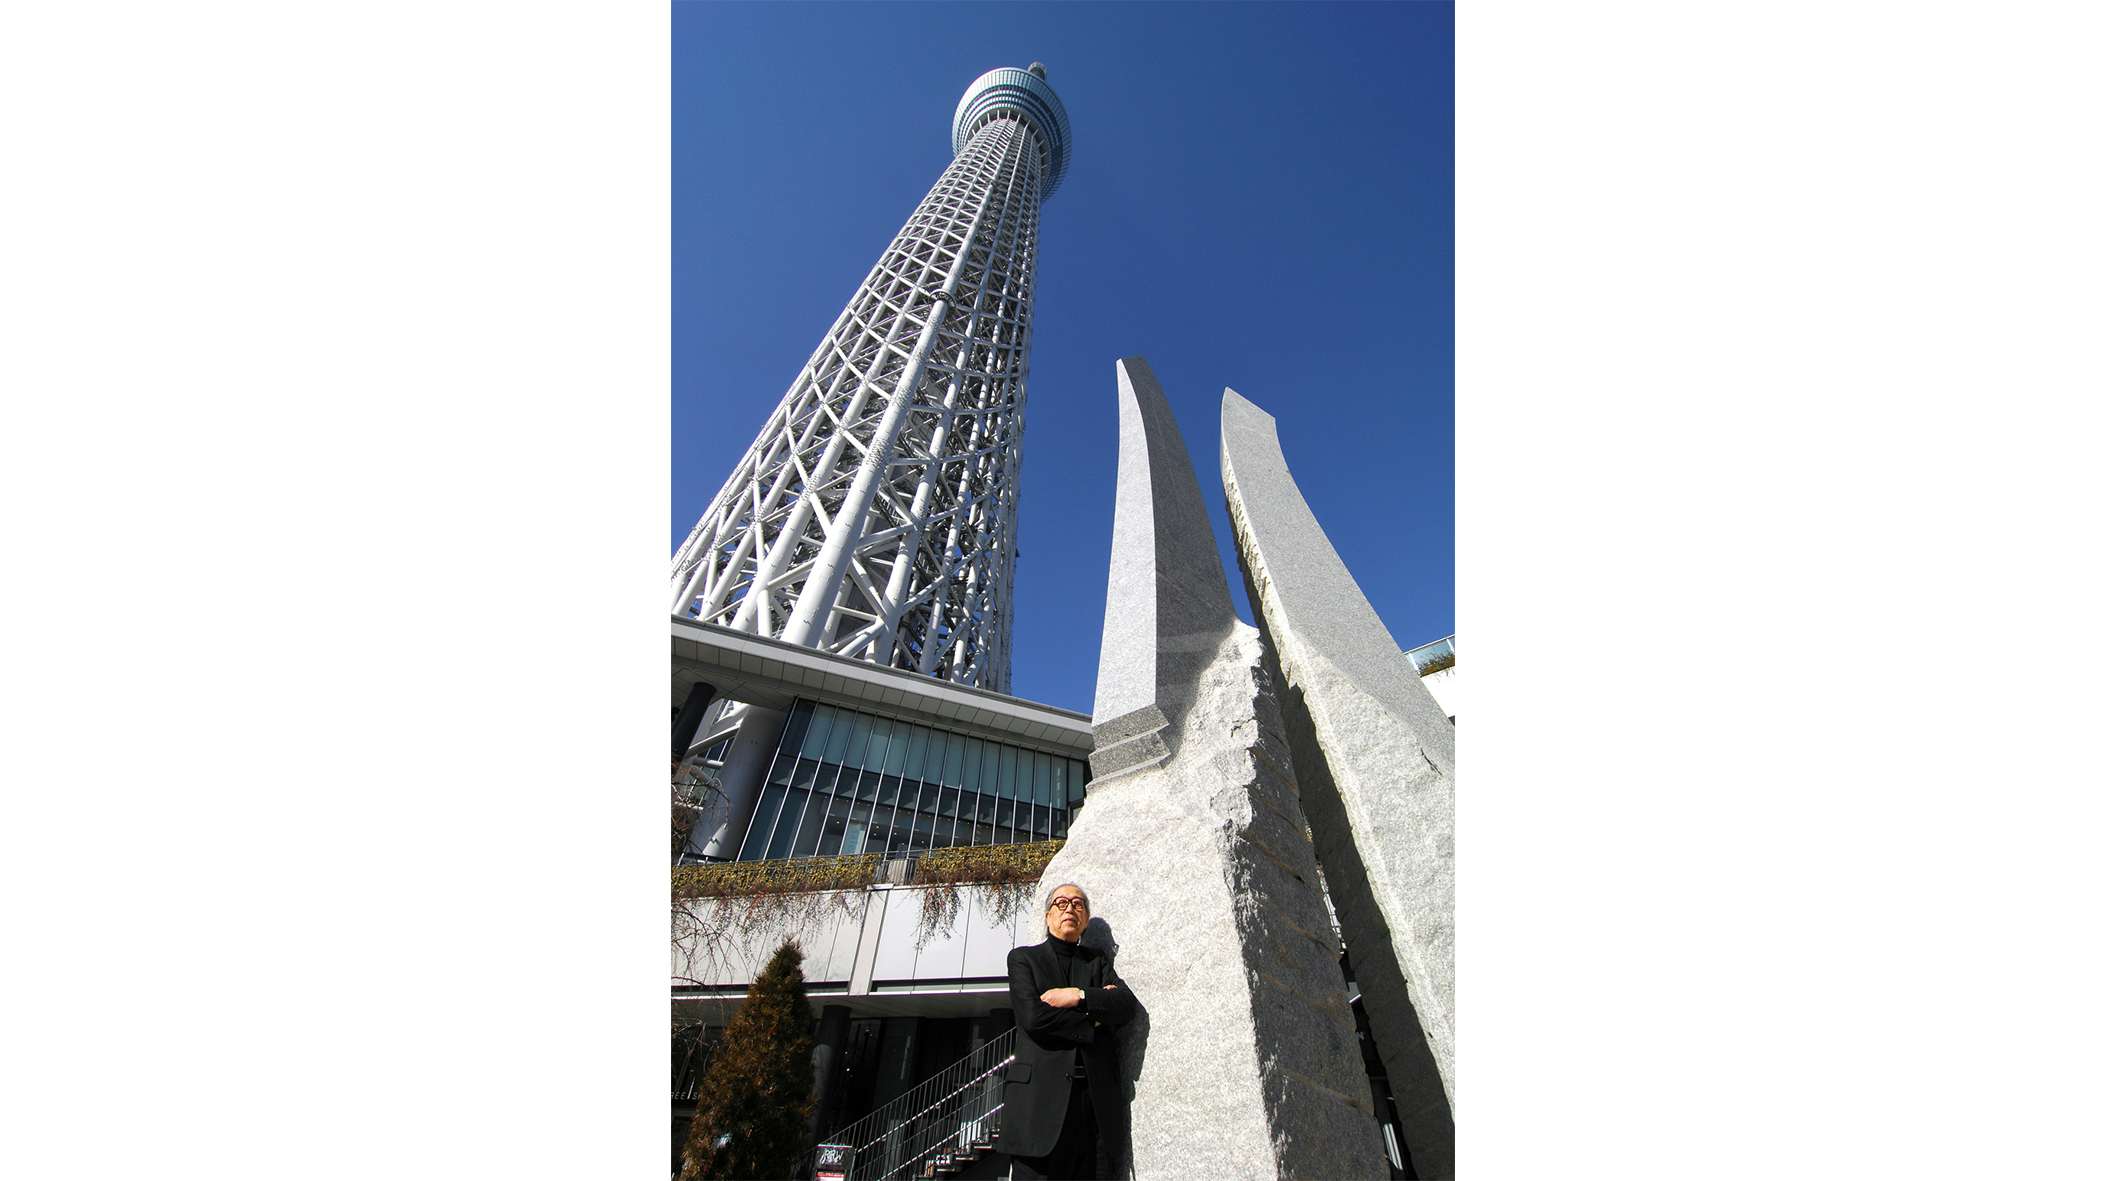 東京スカイツリーのデザイン監修でも知られる彫刻家。澄川喜一の大規模